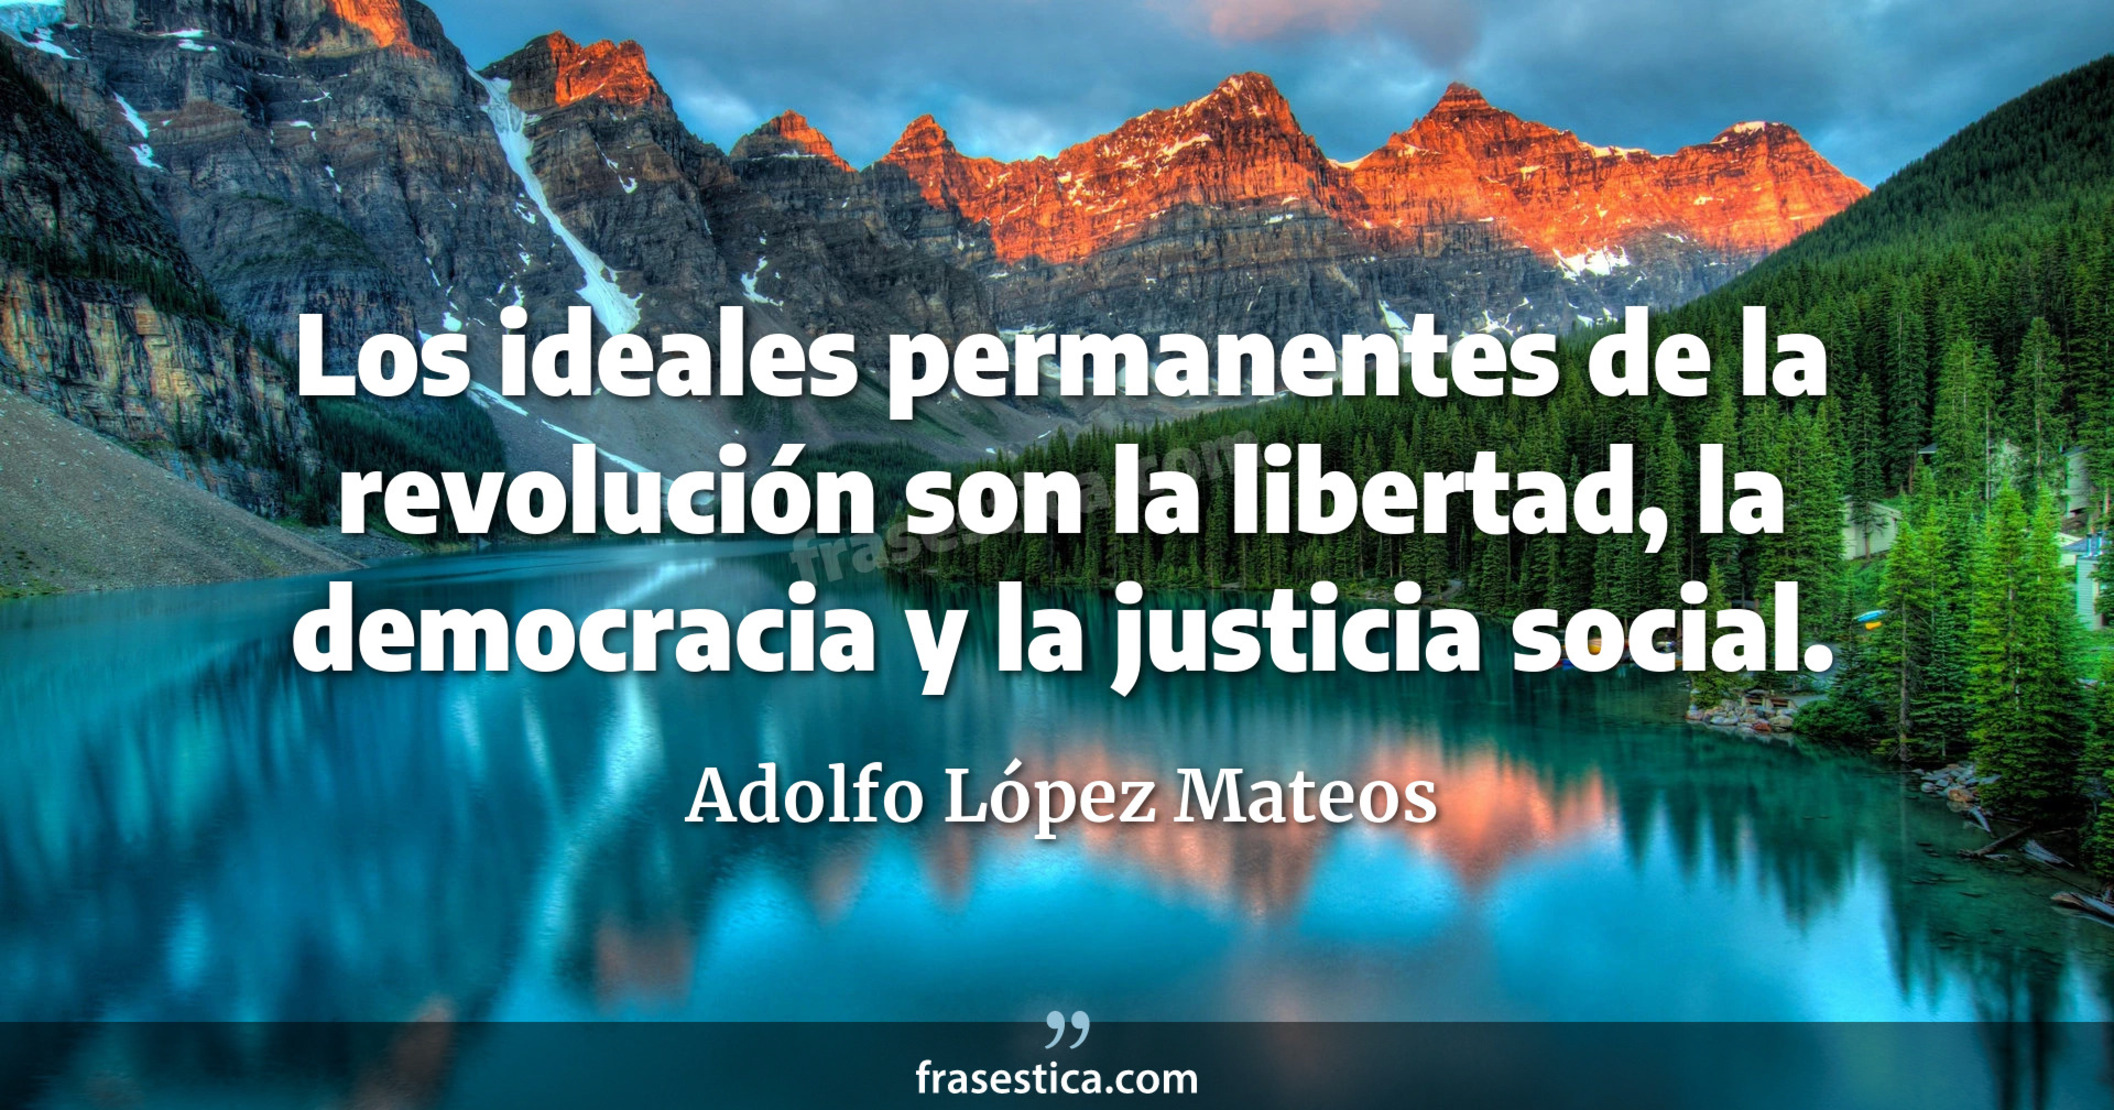 Los ideales permanentes de la revolución son la libertad, la democracia y la justicia social. - Adolfo López Mateos